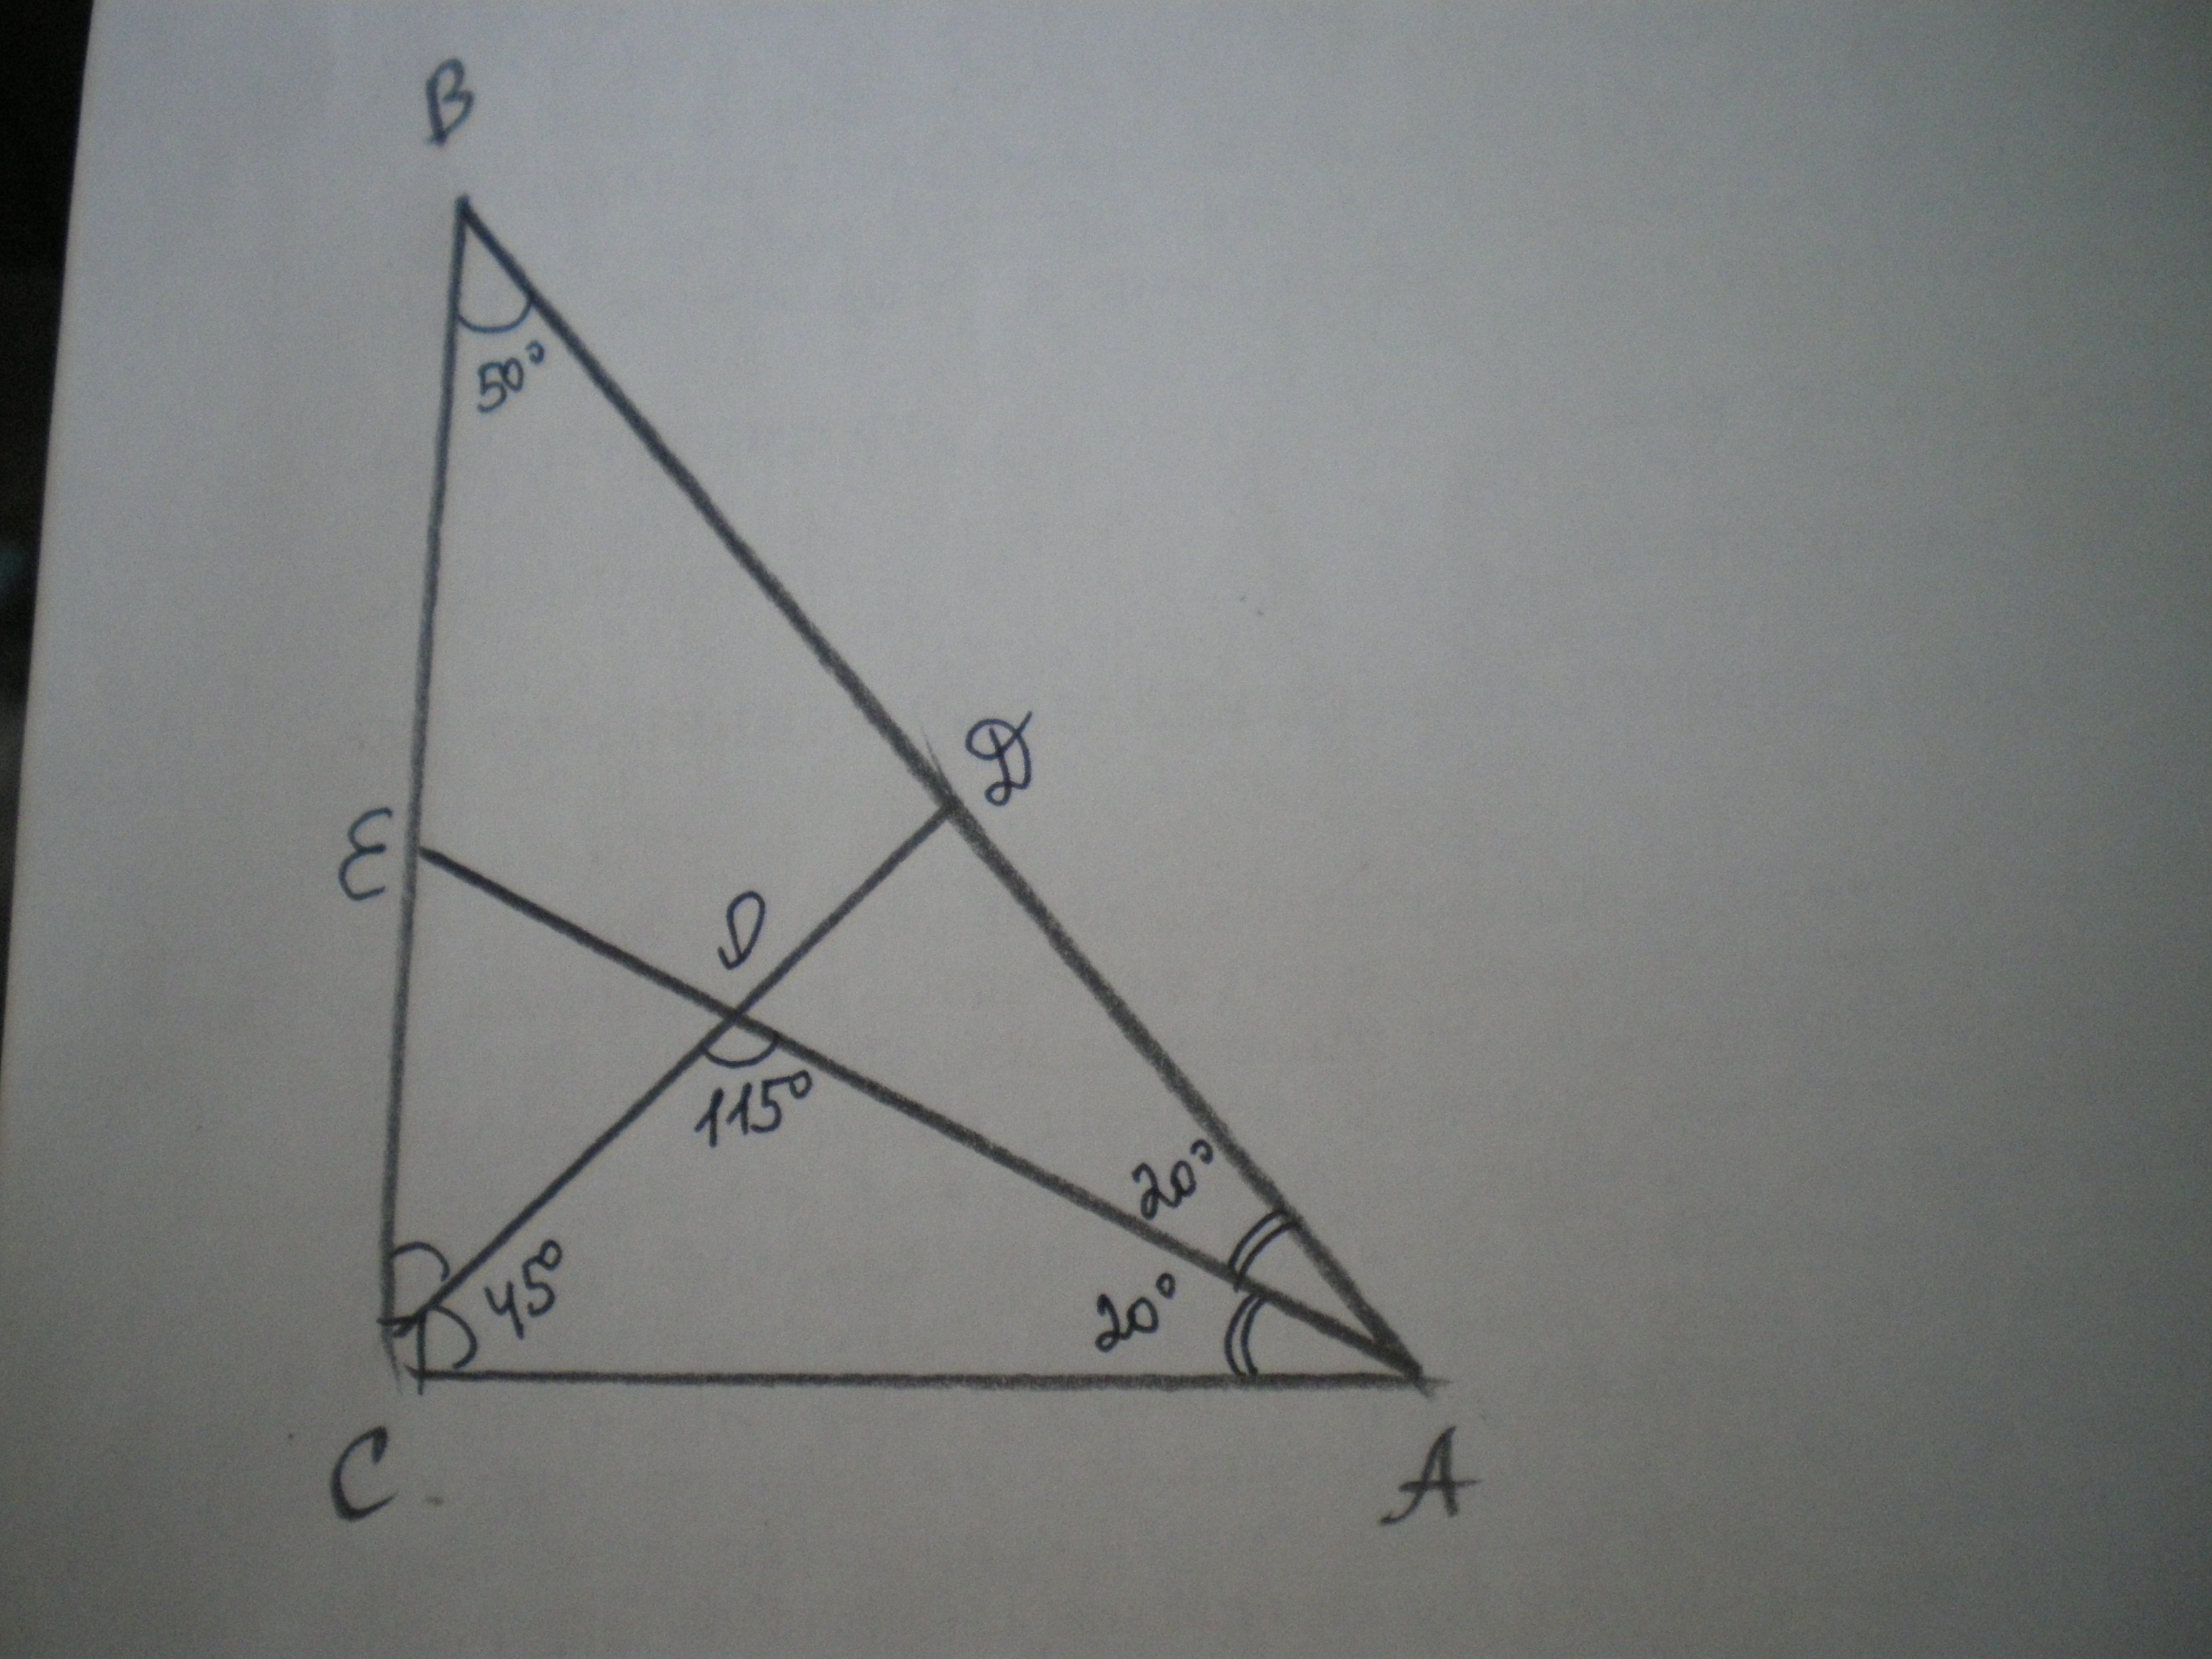 В треугольнике 112 106. Треугольник АВС 90 градусов. Прямоугольный треугольник АВС угол с 90 градусов. Биссектрисы пересекаются в точке. CD биссектриса треугольника.